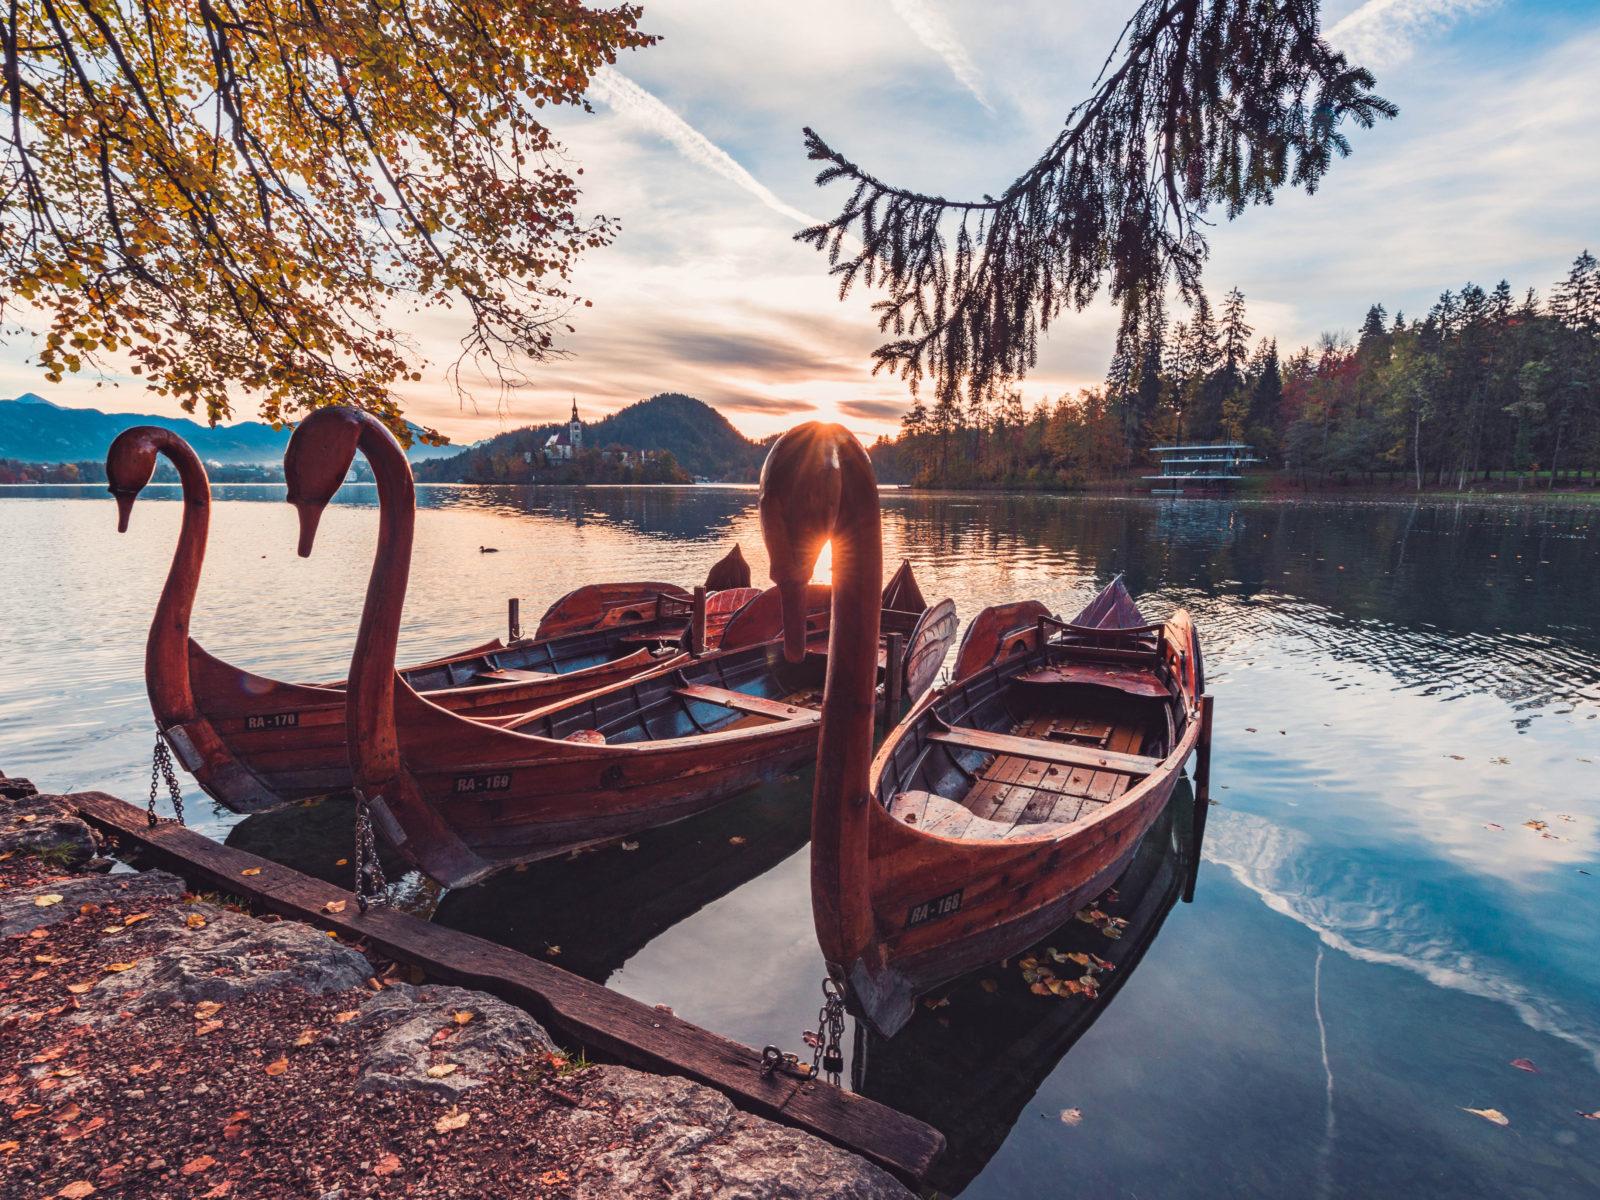 Lake Bled Slovenia Swan Boats Morning Sun Autumn Landscape